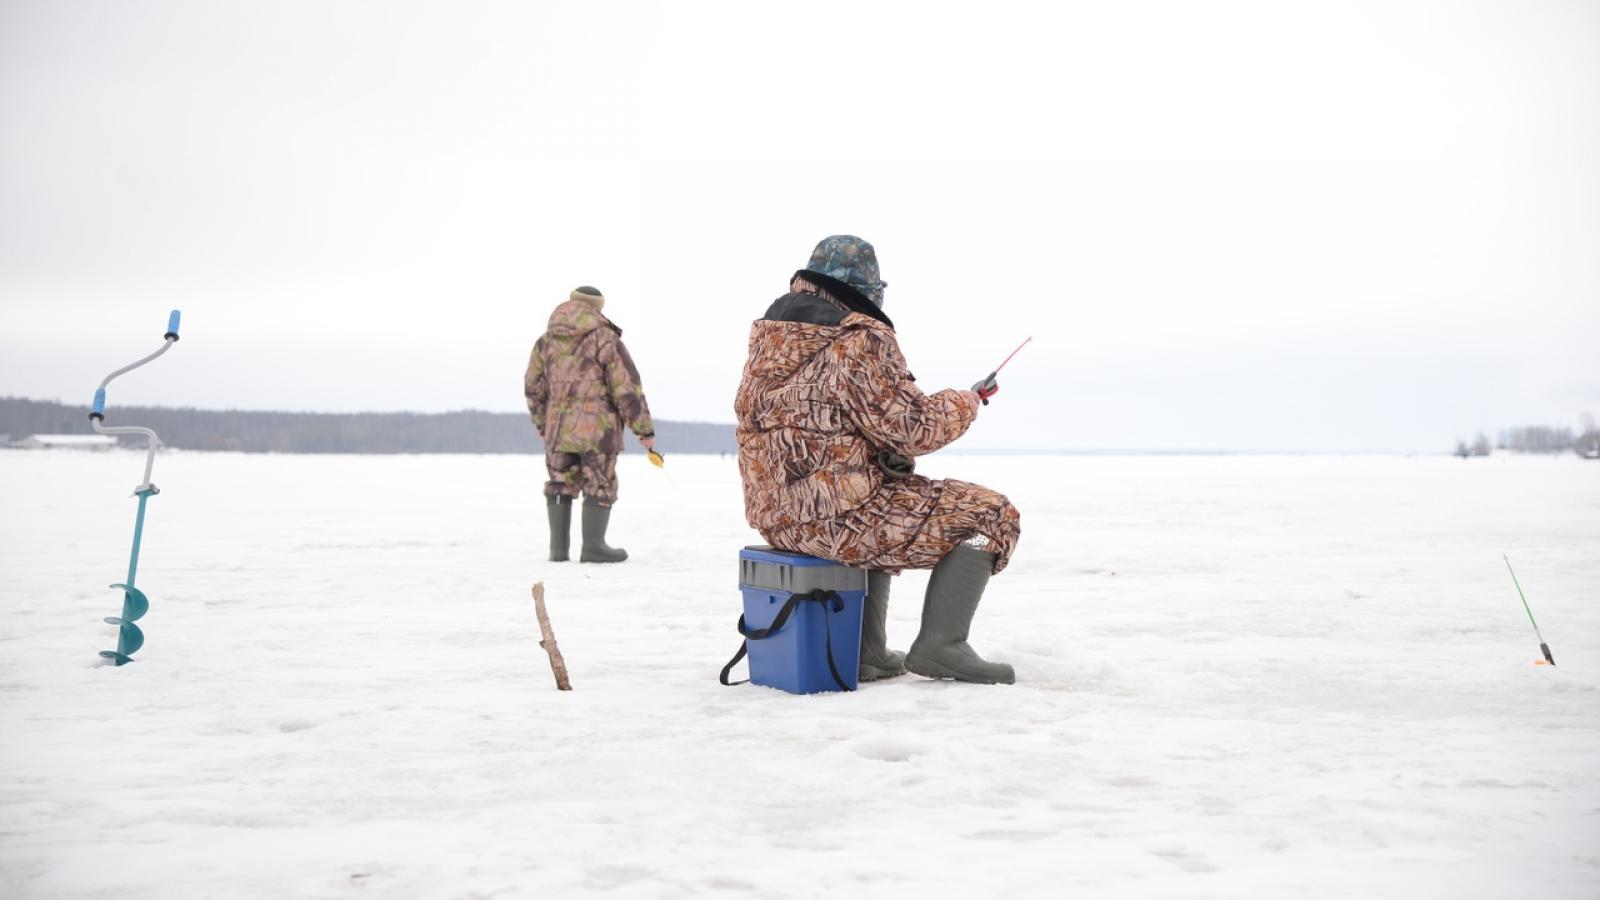 Правила рыболовства для Рыбинского водохранилища